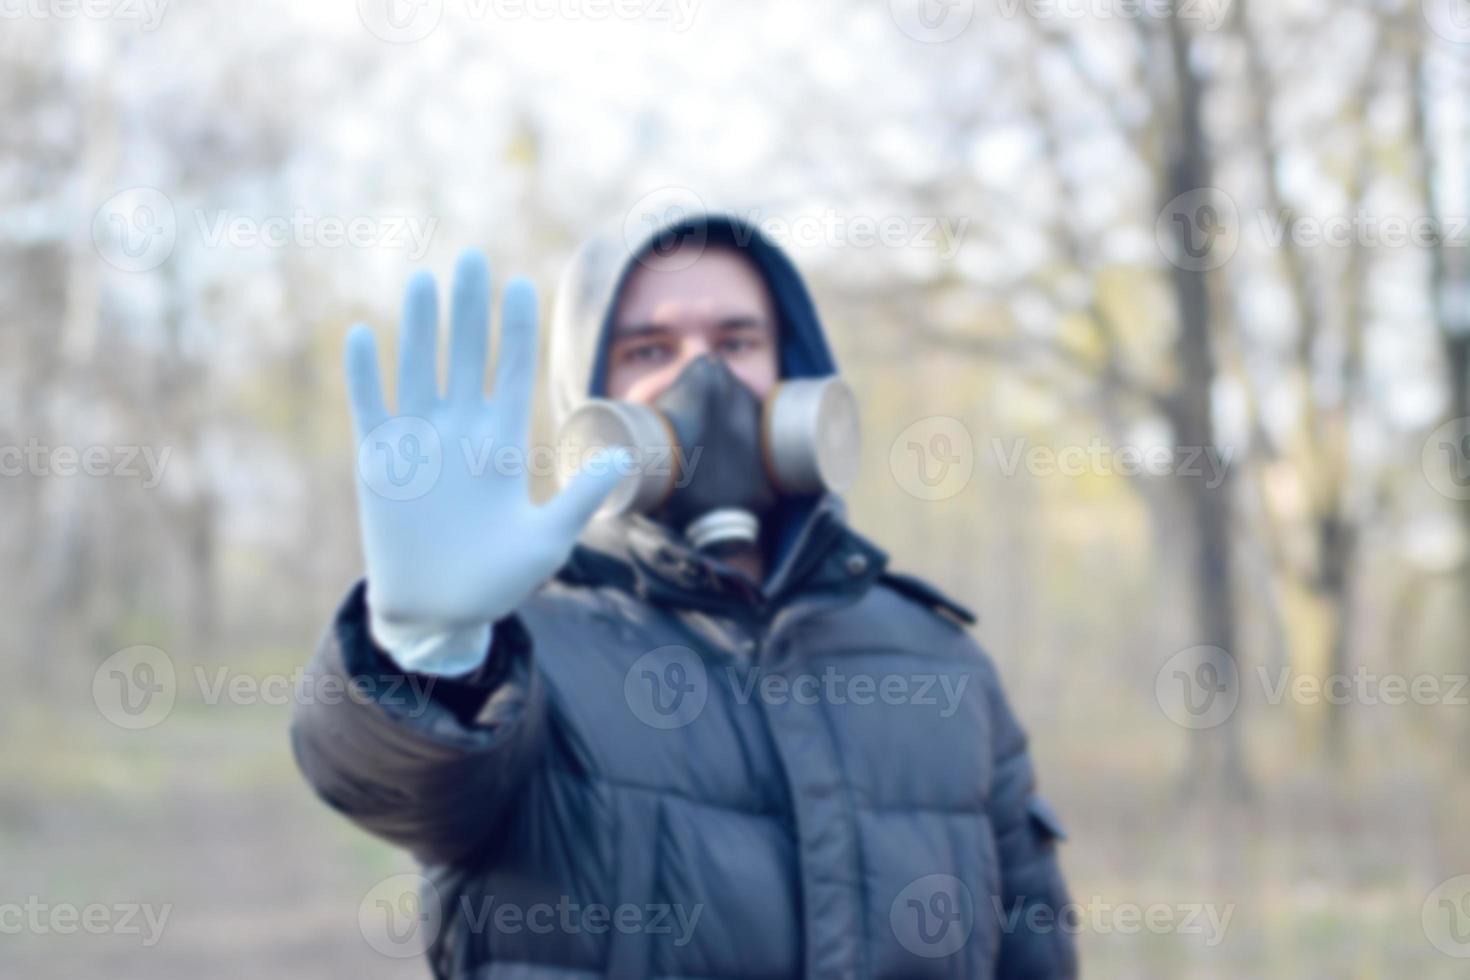 wazig portret van jong Mens in beschermend gas- masker en rubber beschikbaar handschoenen shows hou op gebaar buitenshuis in voorjaar hout foto